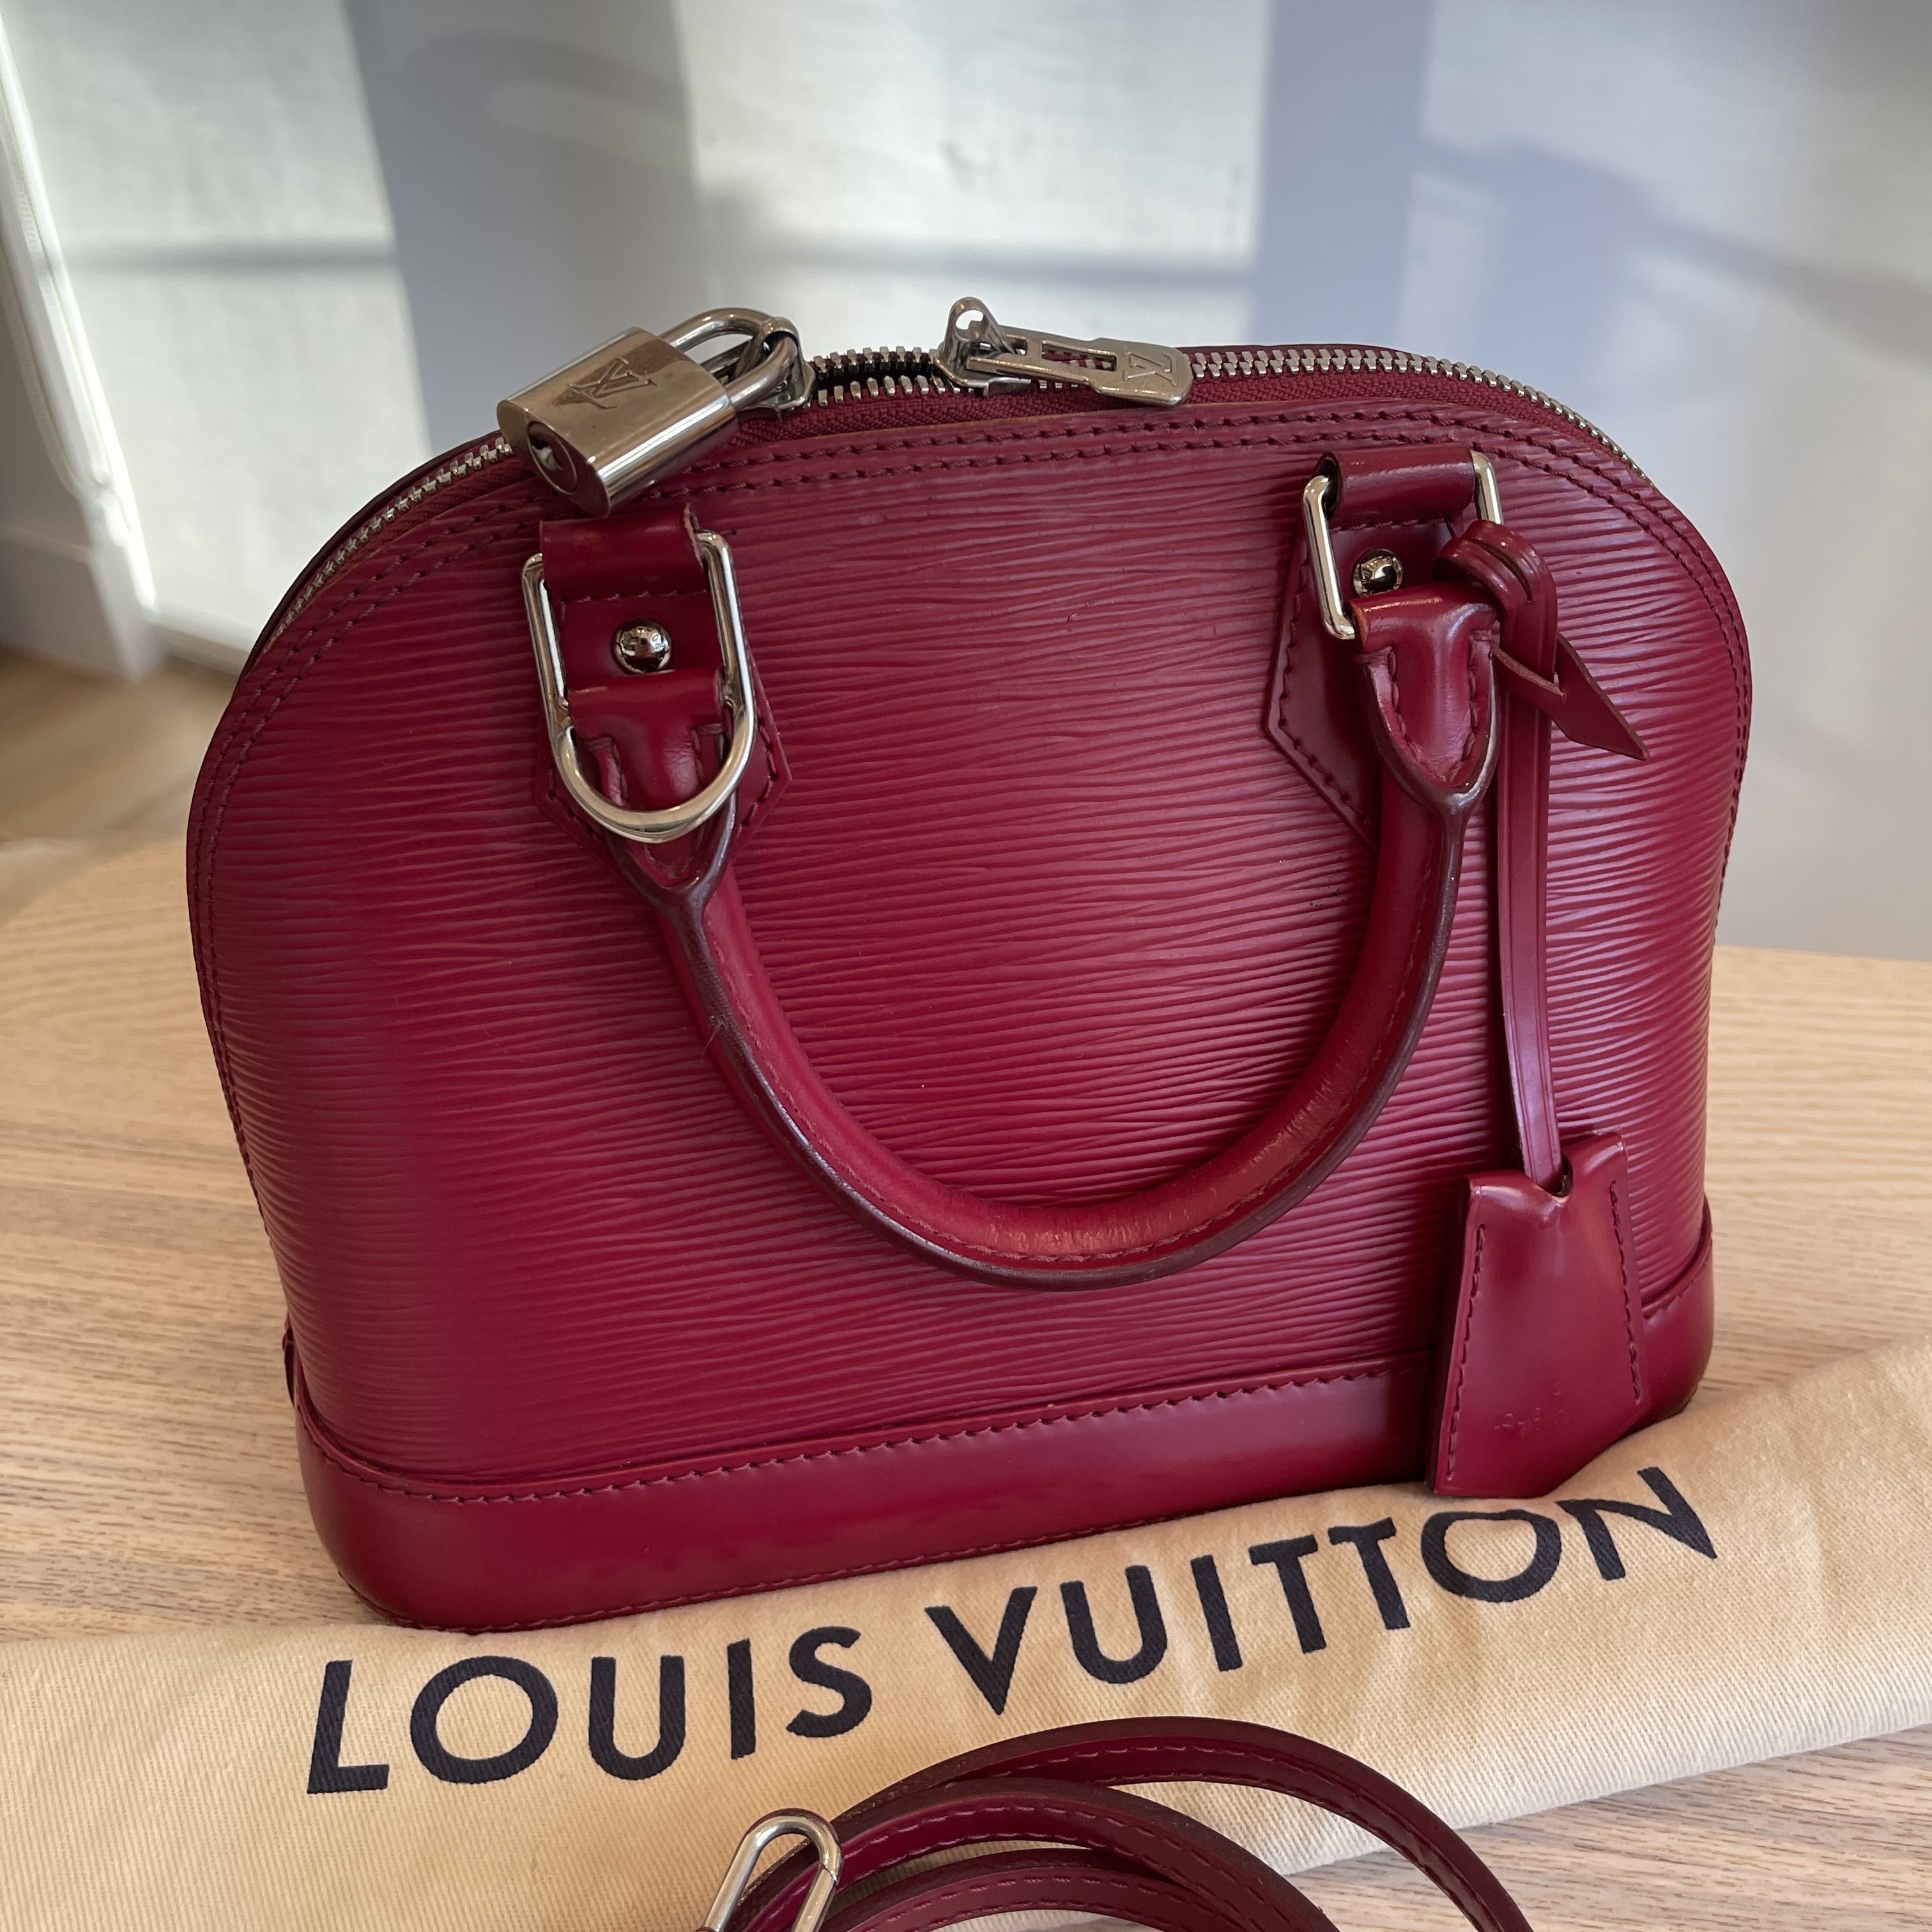 Louis Vuitton Alma BB in Fuchsia Epi Leather - SOLD